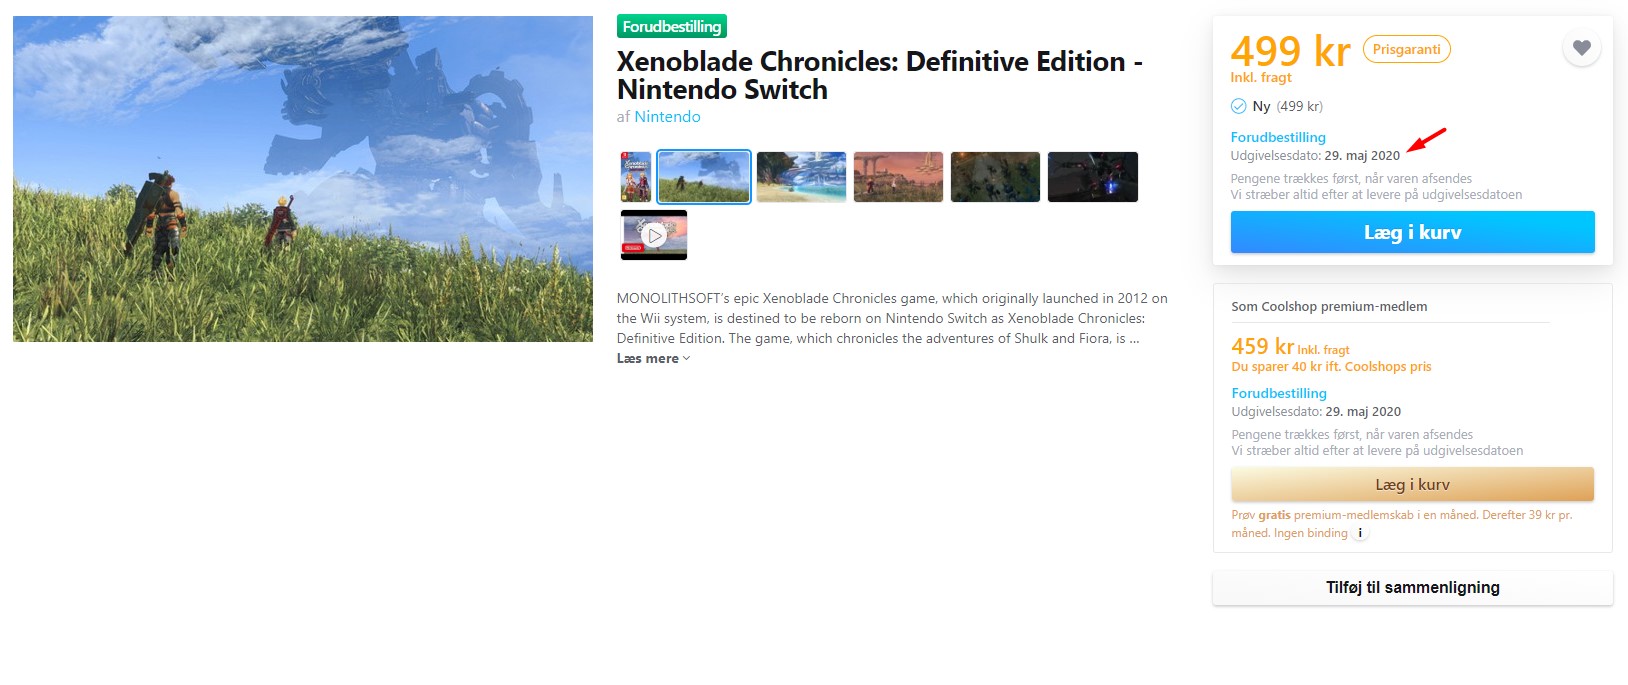 Xenoblade Chronicles: список окончательного издания